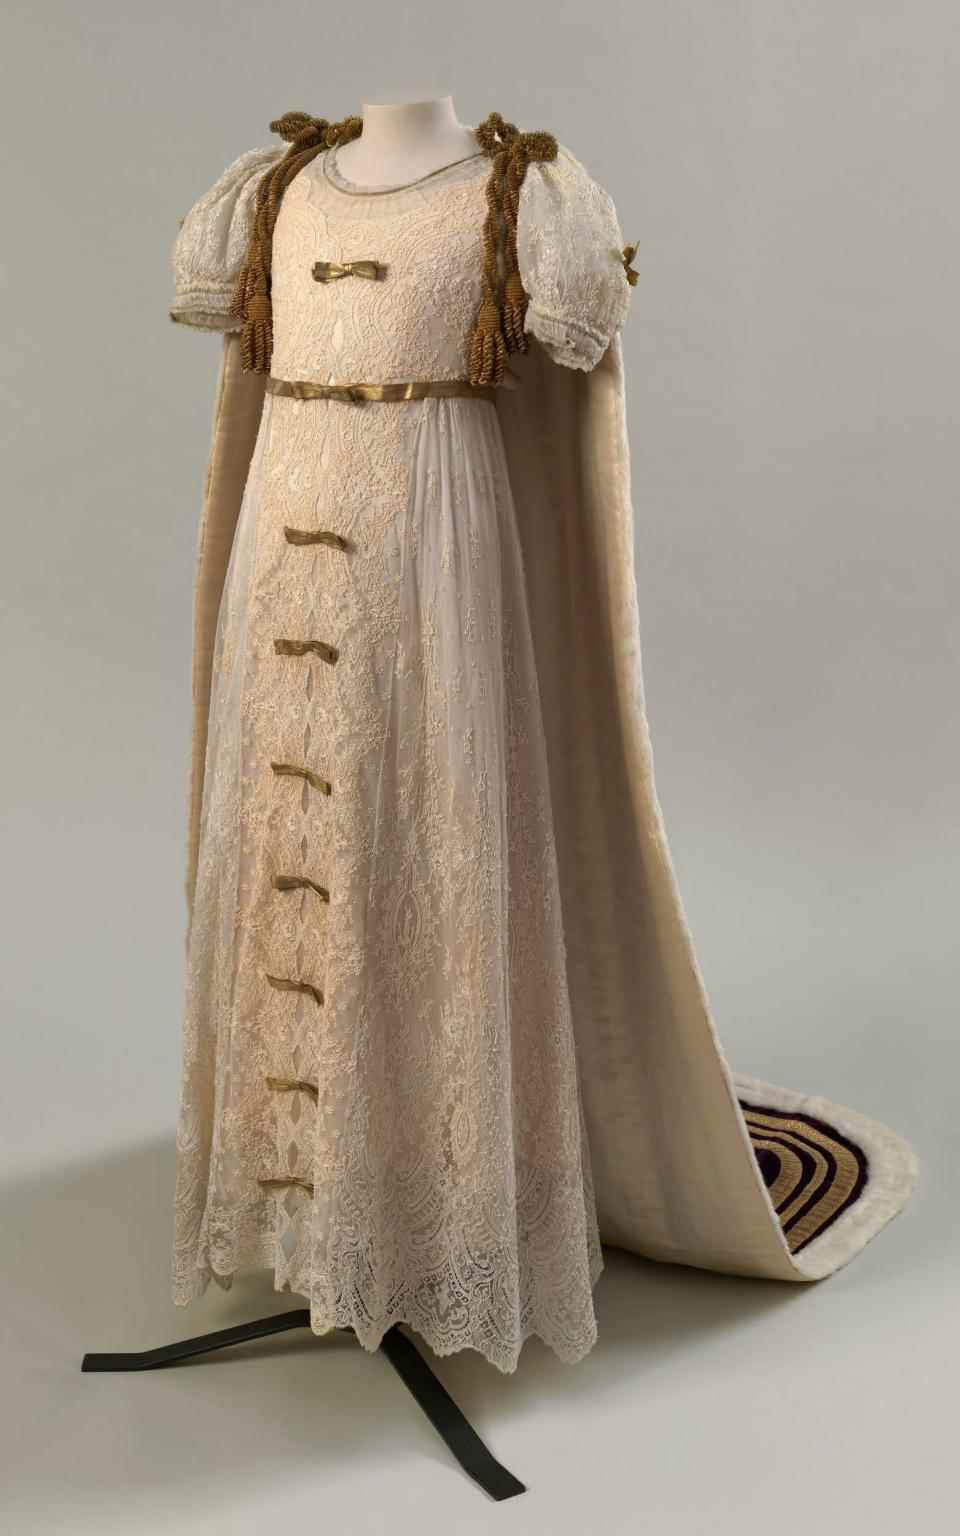 Robe de couronnement de la princesse Elizabeth - Royal Collection Trust